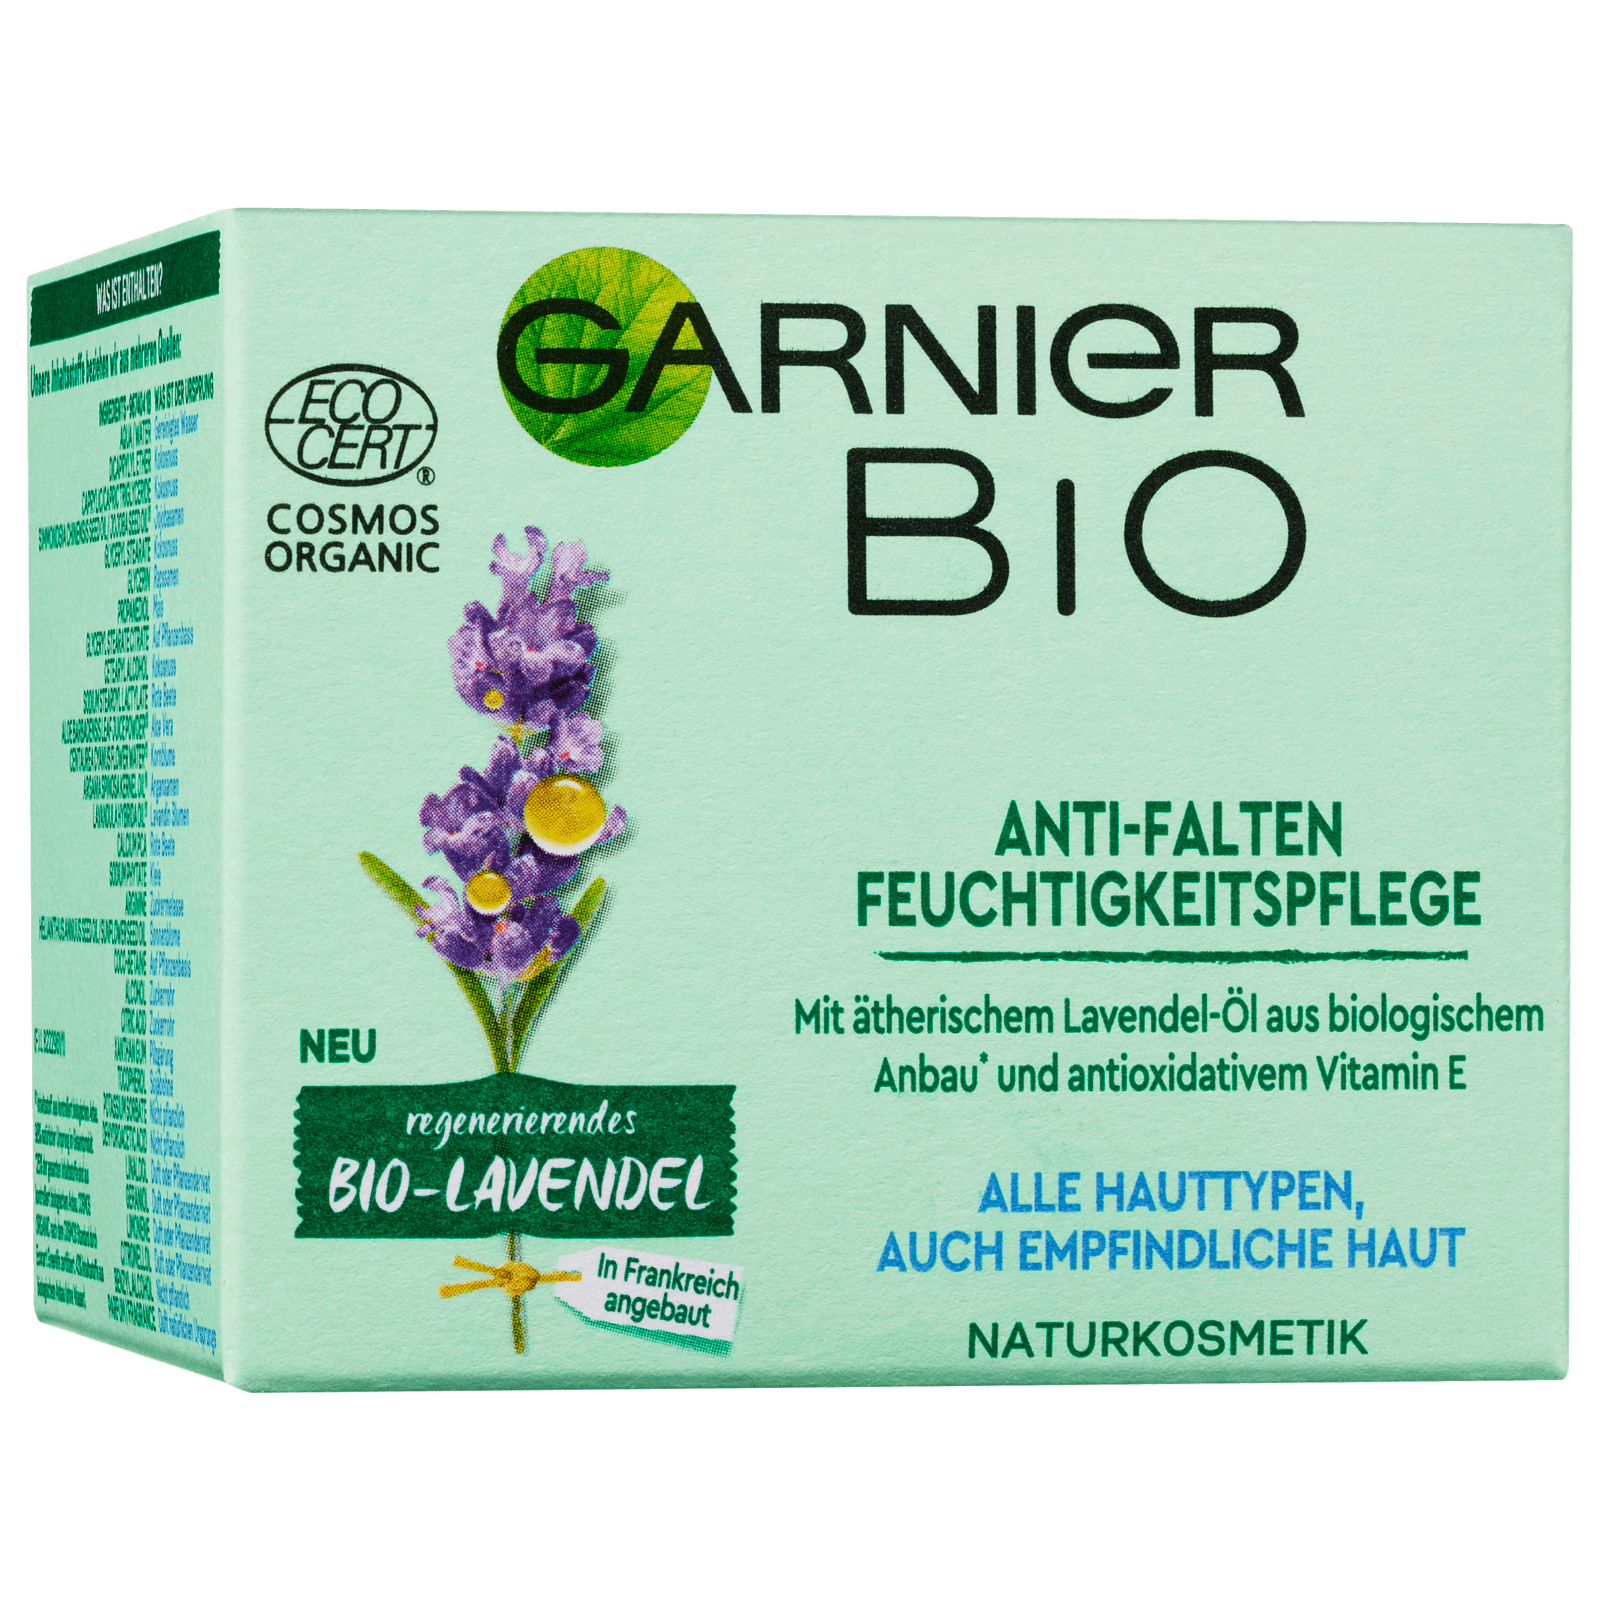 Garnier Bio Anti-Falten Feuchtigkeitspflege Creme 50ml